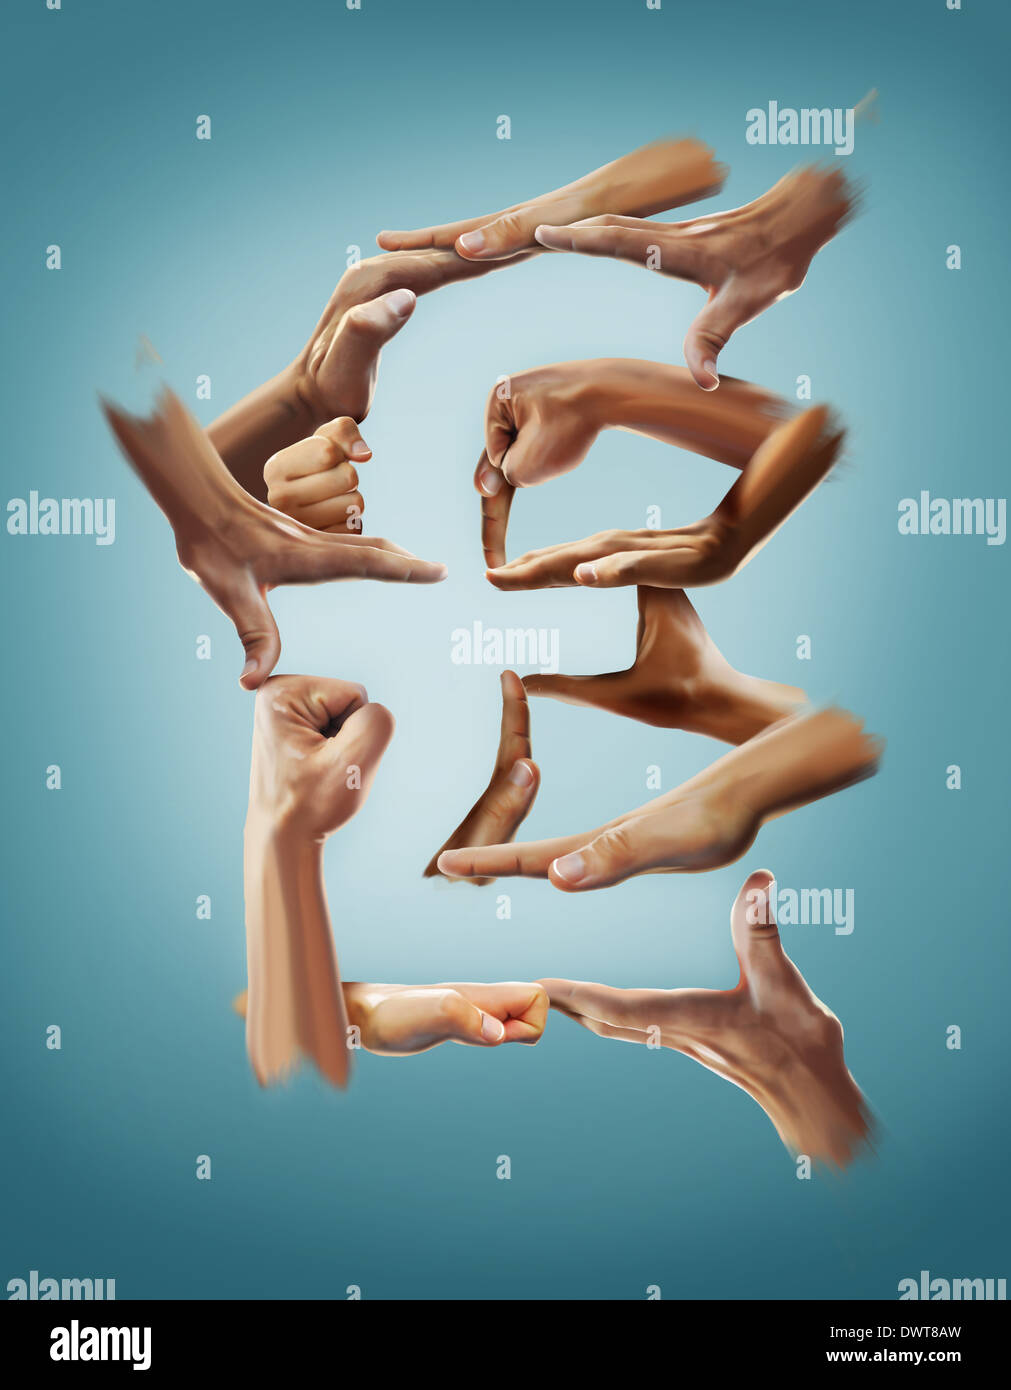 Anschauliches Bild Hände bilden Nummernzeichen vor blauem Hintergrund Stockfoto